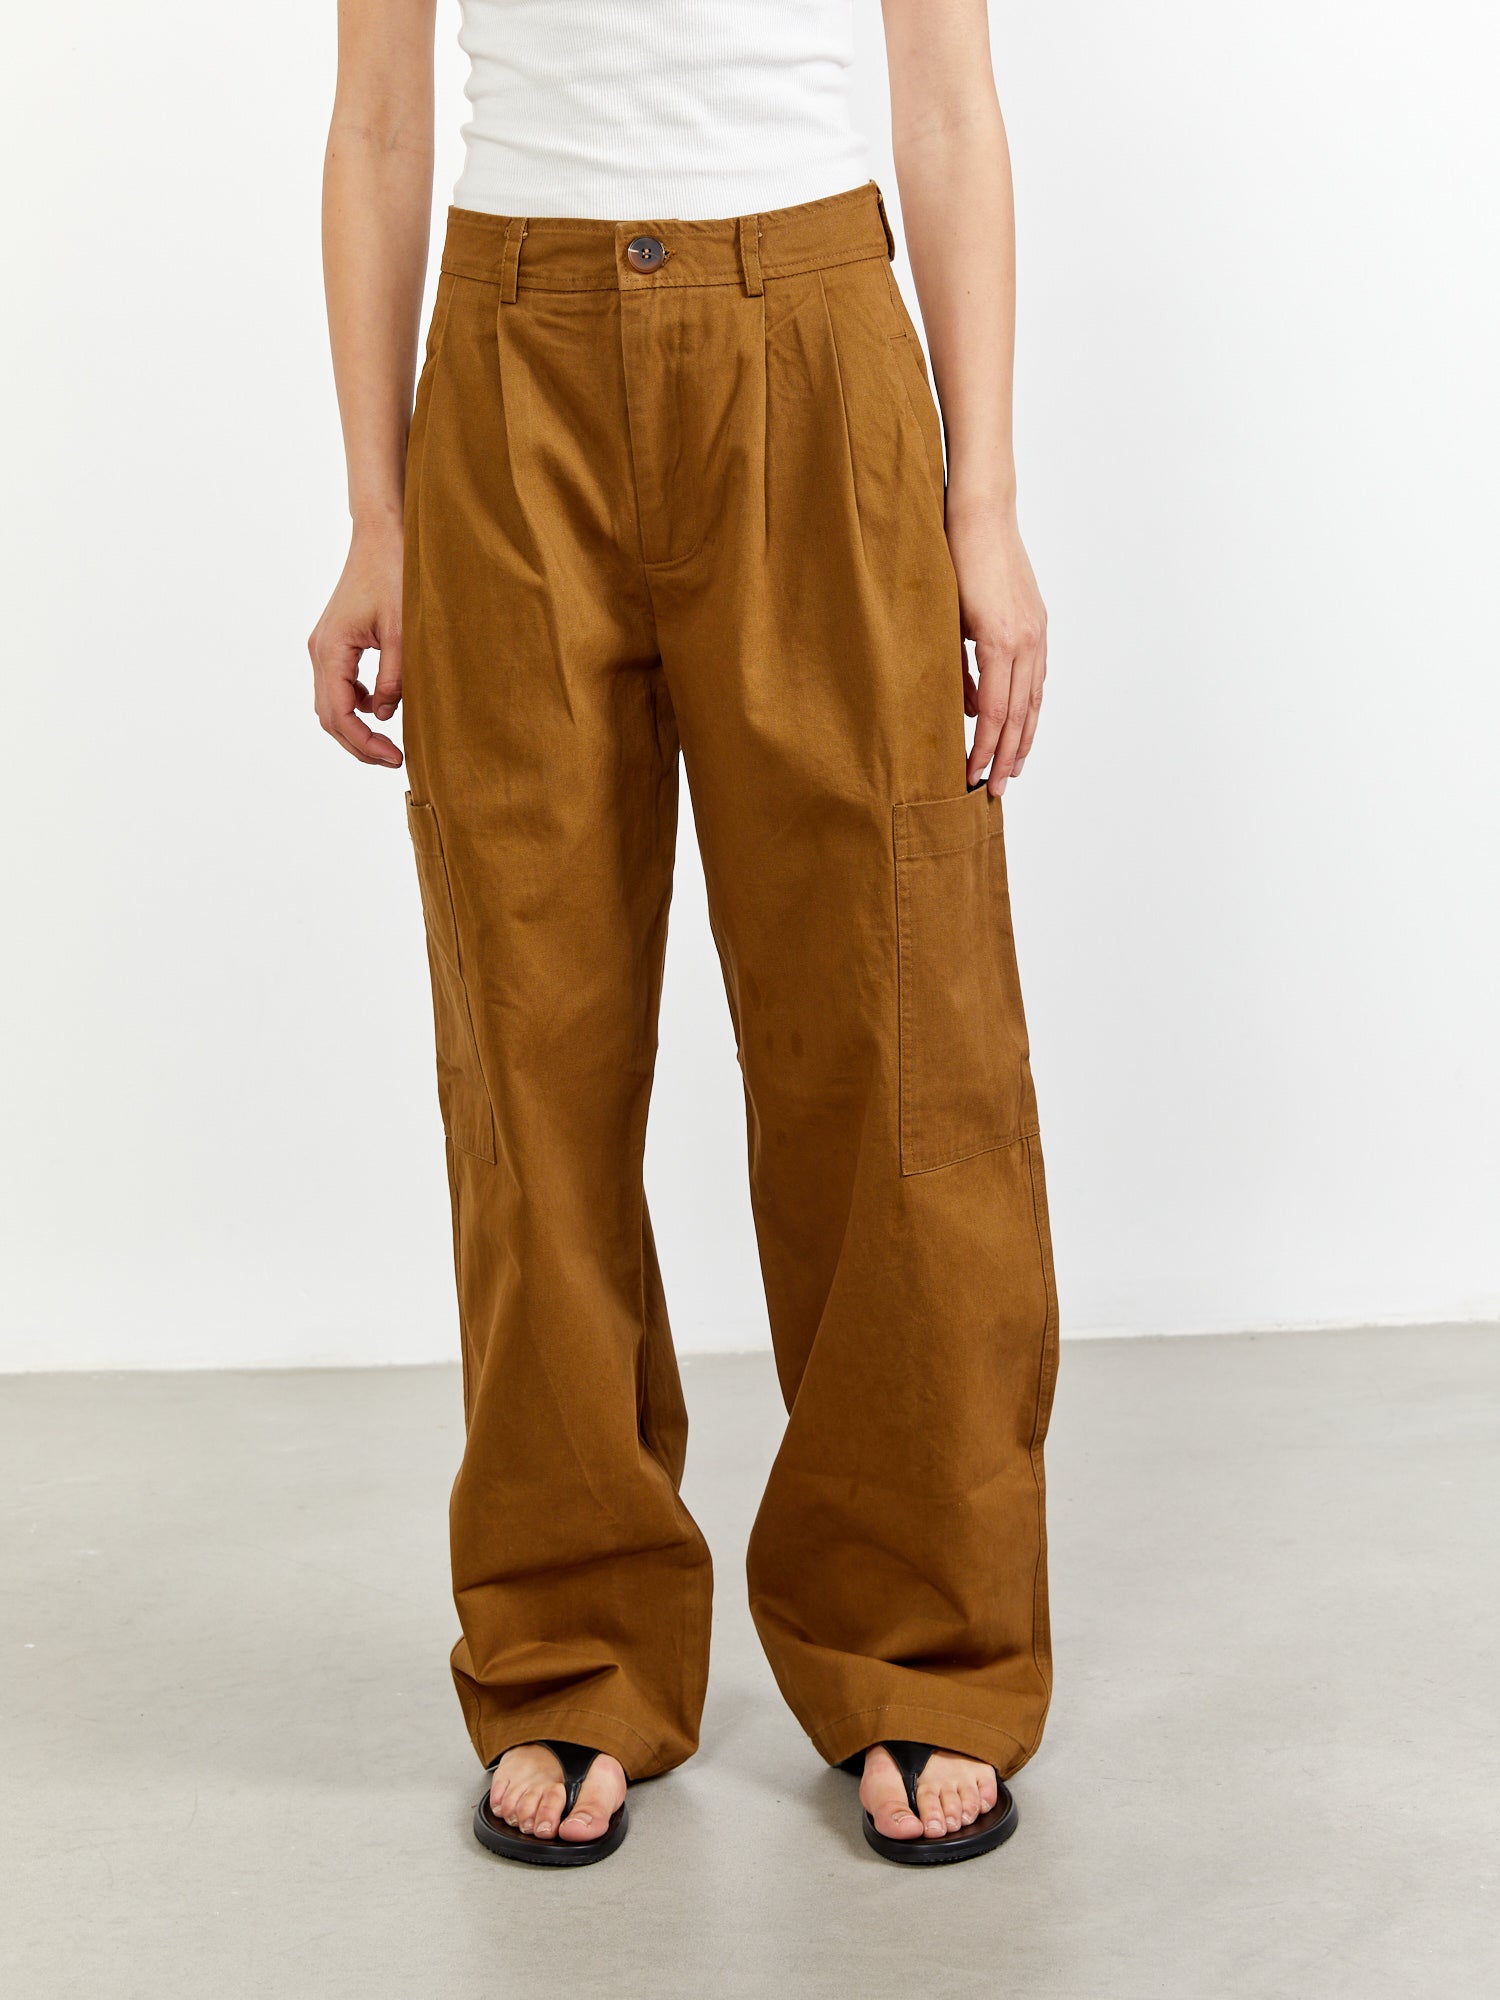 מכנסי דגמ"ח בגזרה ישרה וגבוהה- Style River|סטייל ריבר